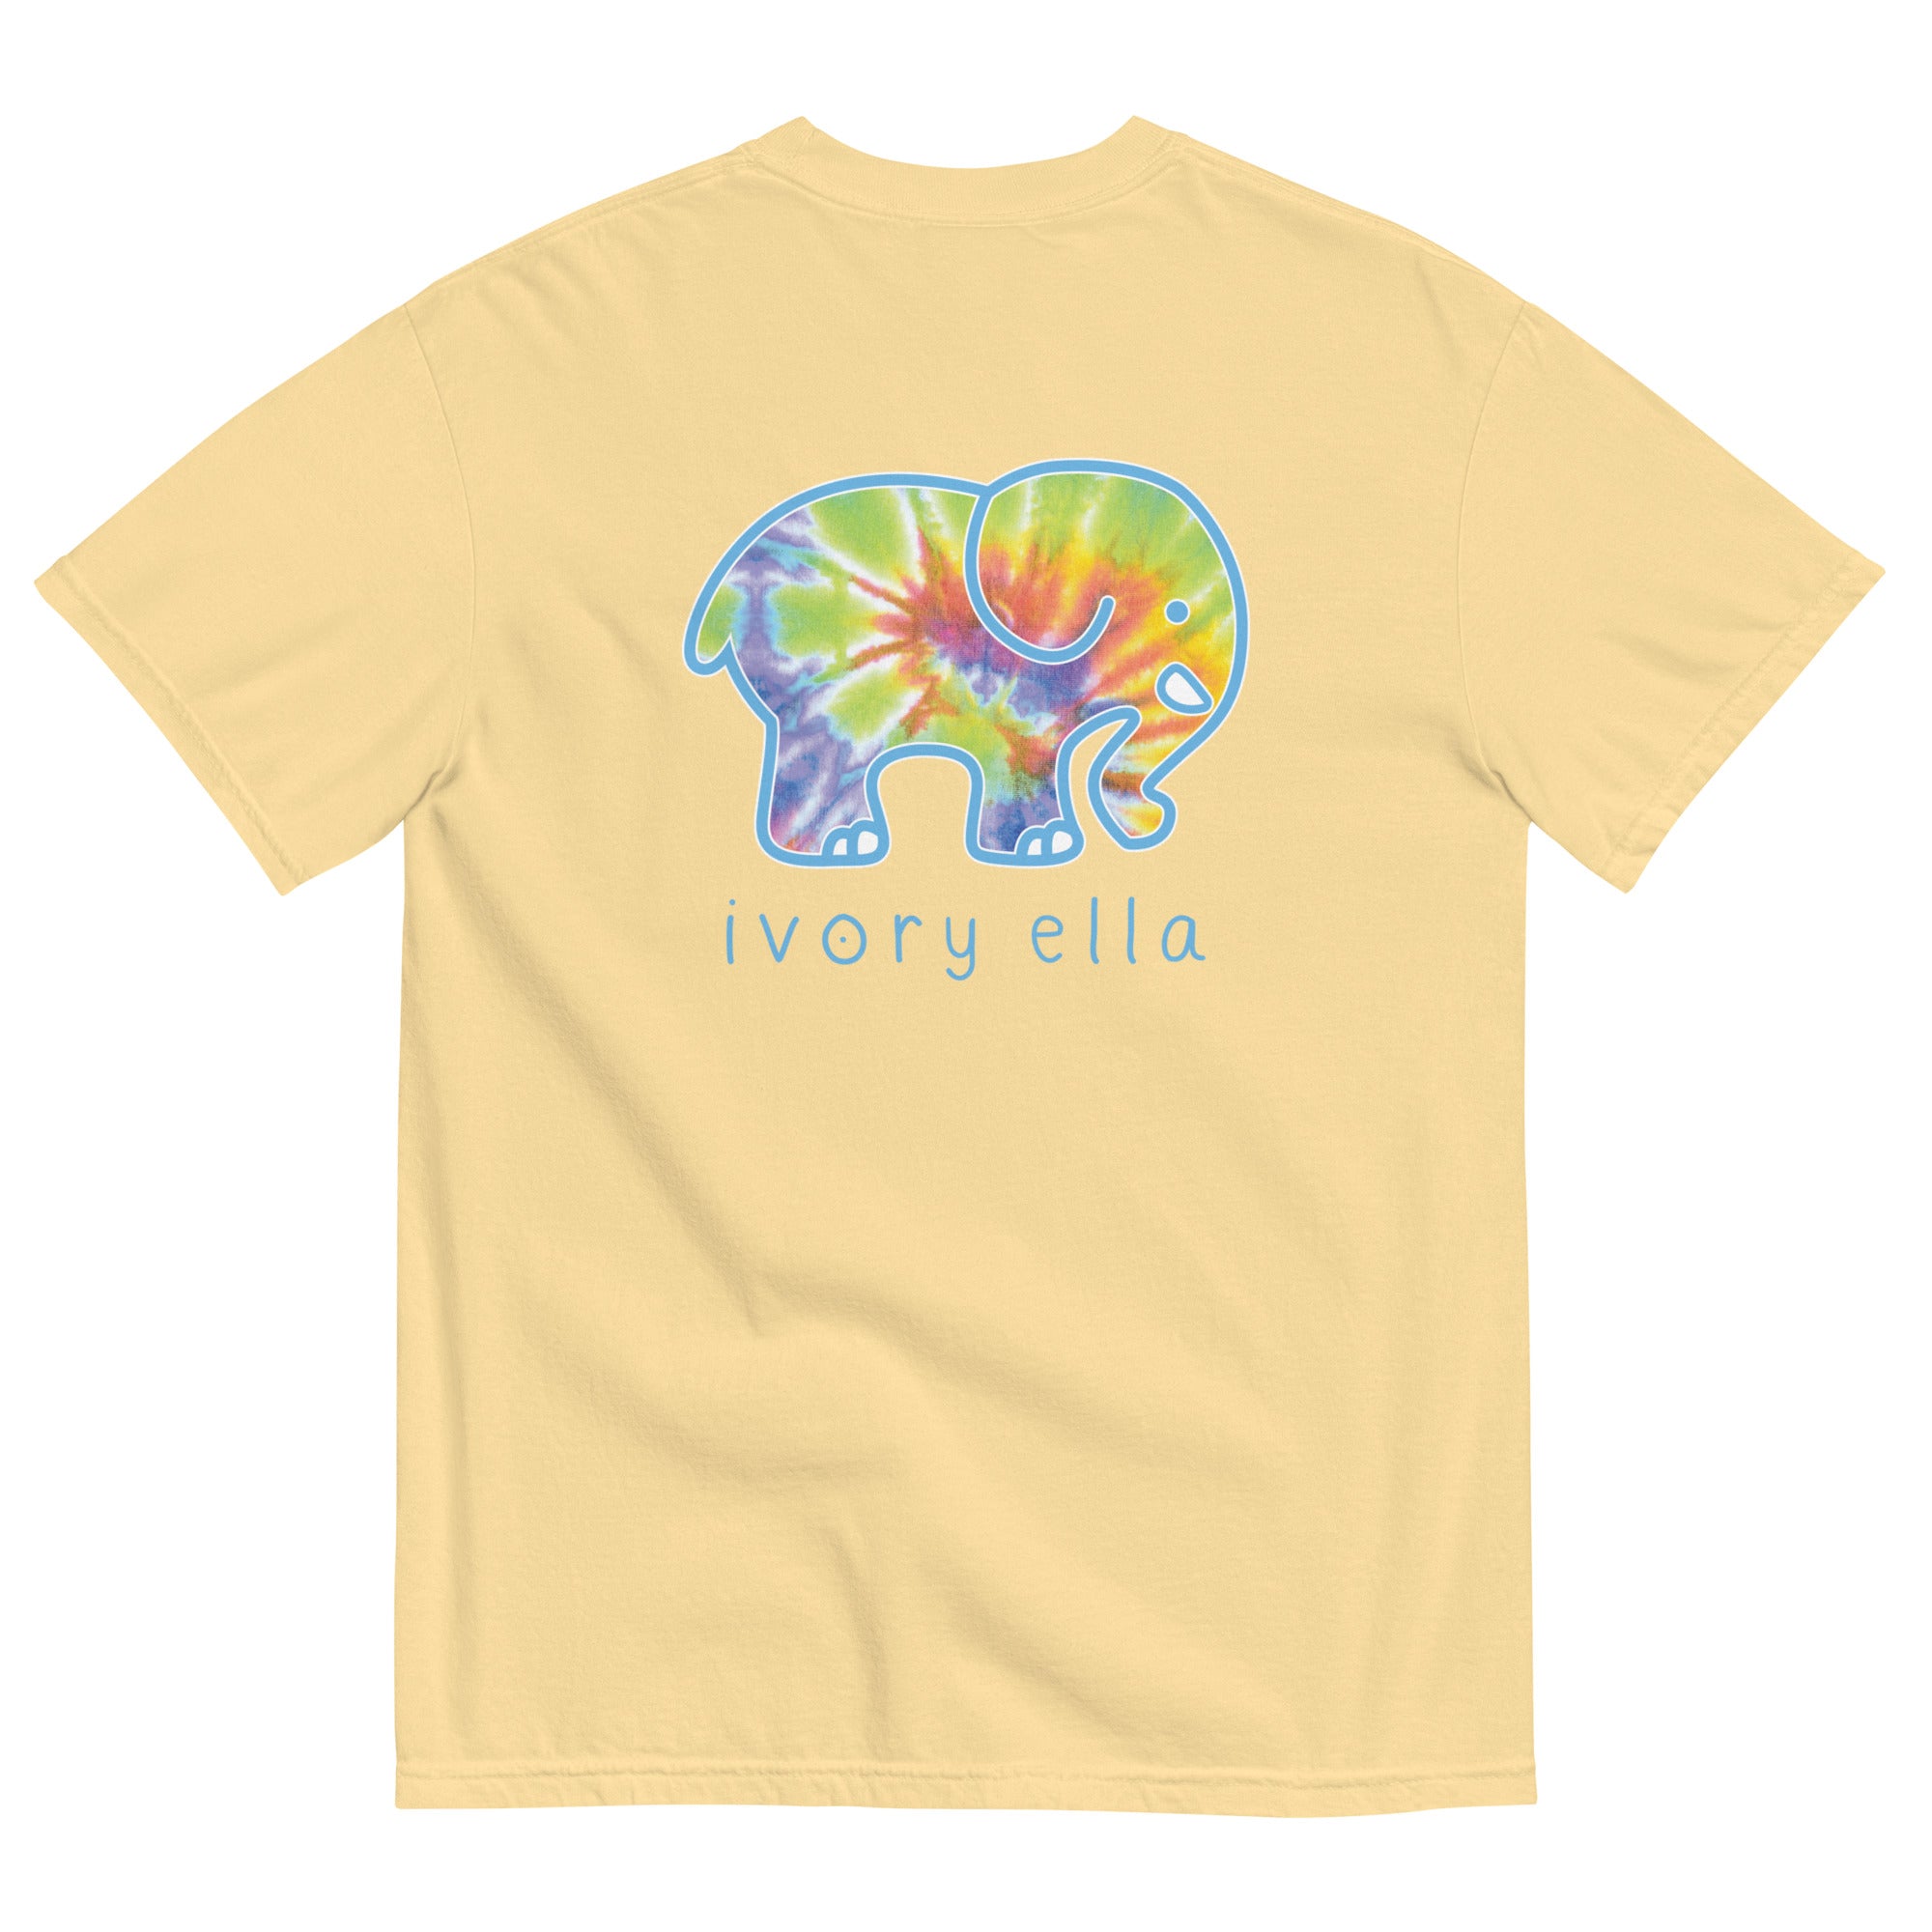 Reef Swirl Tie Dye Unisex T-shirt